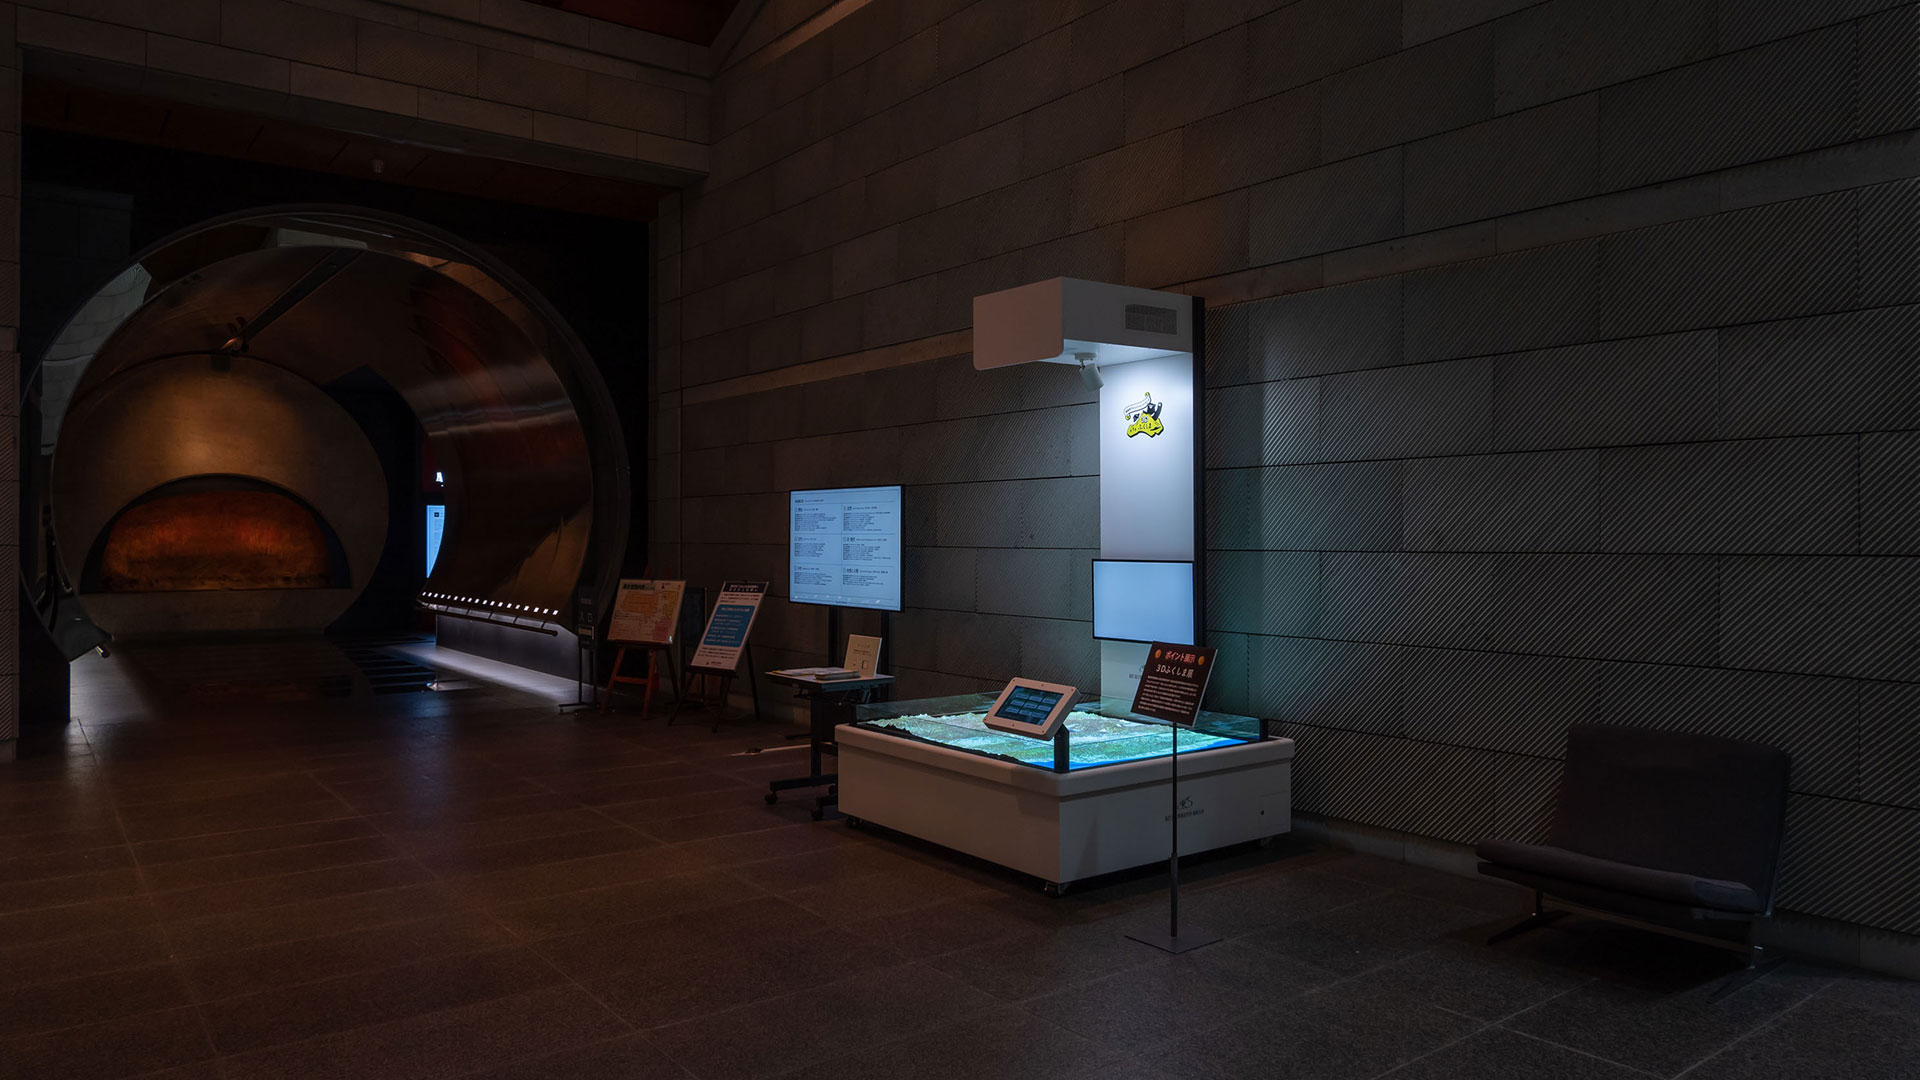 福島県立博物館展示室入口に設置された3Dふくしまの写真